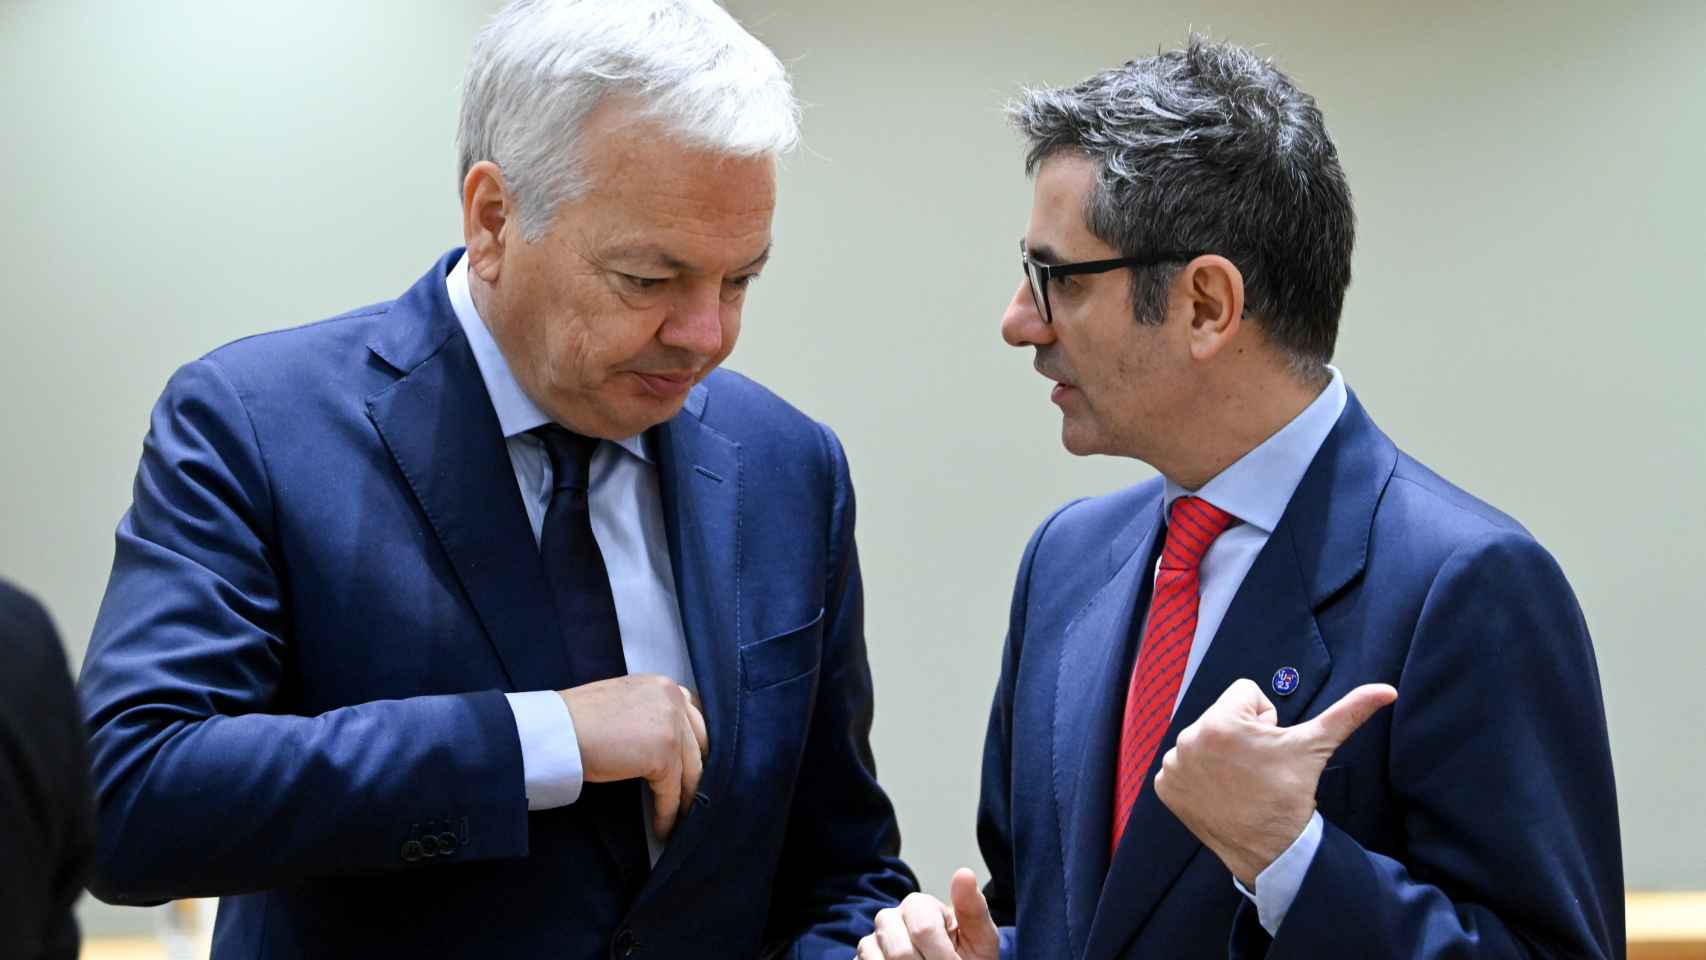 Didier Reynders y Félix Bolaños conversan durante el Consejo de Justicia de la UE celebrado este lunes en Bruselas